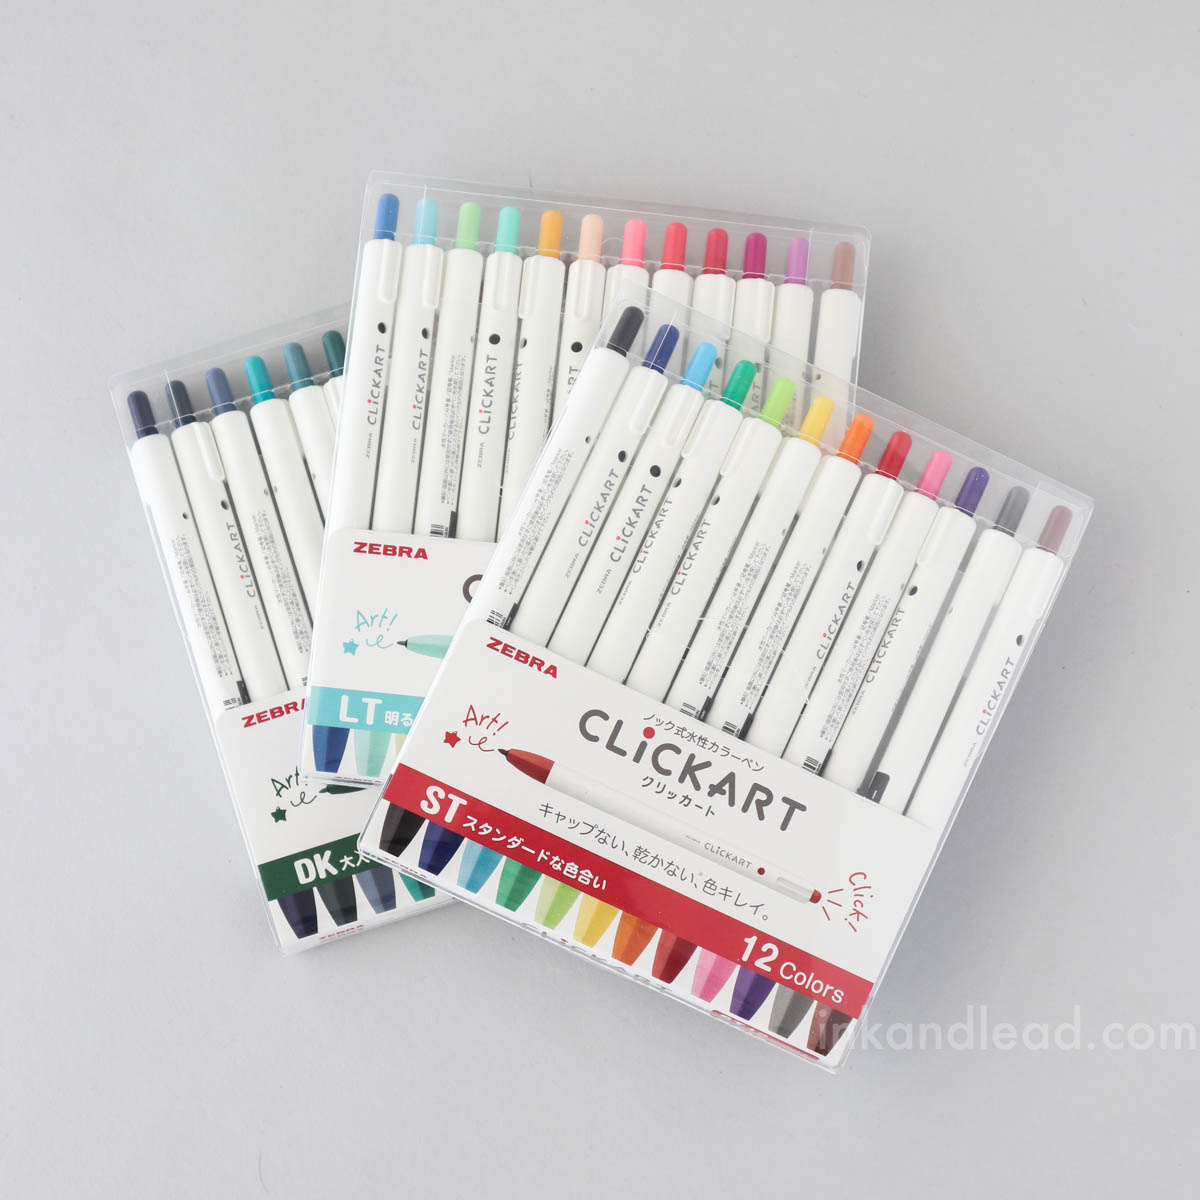 Zebra ClickArt Retractable Marker Pen 36 Colors WYSS22-36C-N Japan